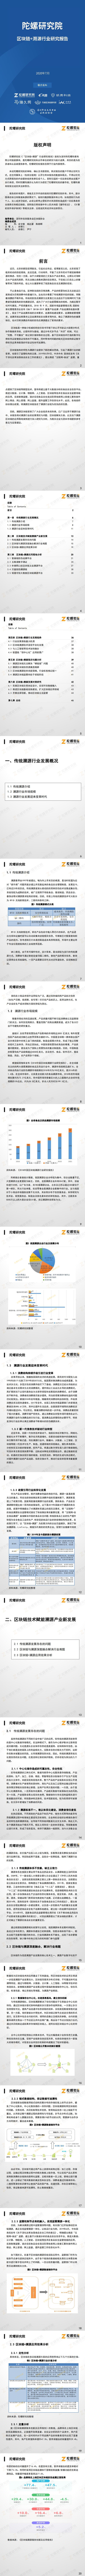 【陀螺研究院】中国“区块链+溯源”行业研究报告_0.jpg